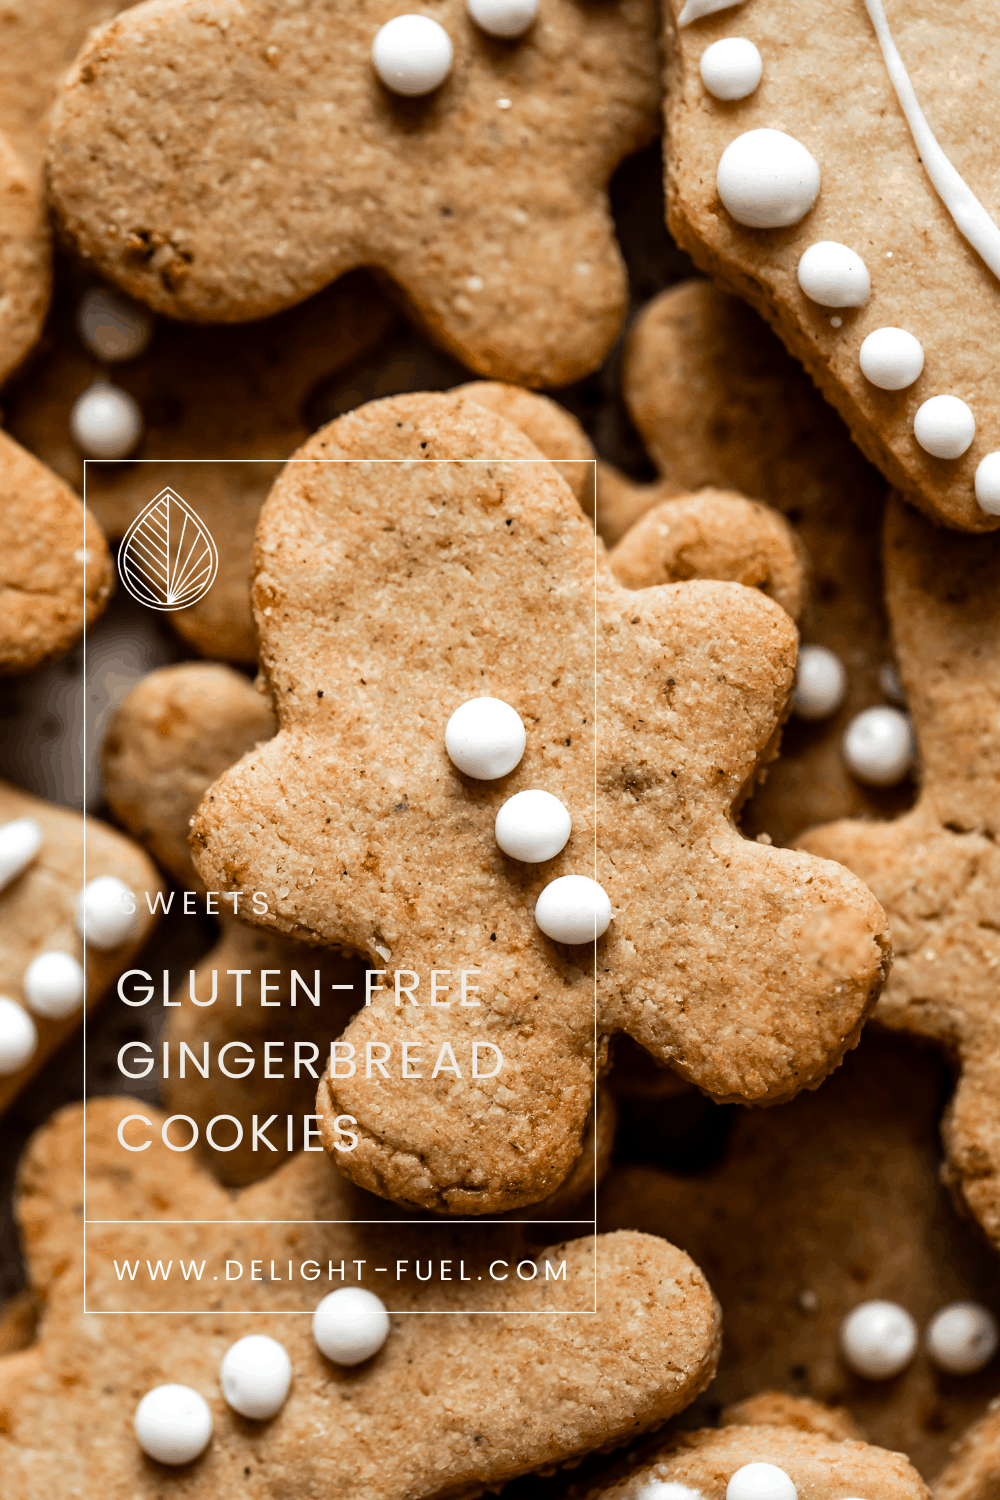 Gluten-free Gingerbread Cookies - Delight Fuel